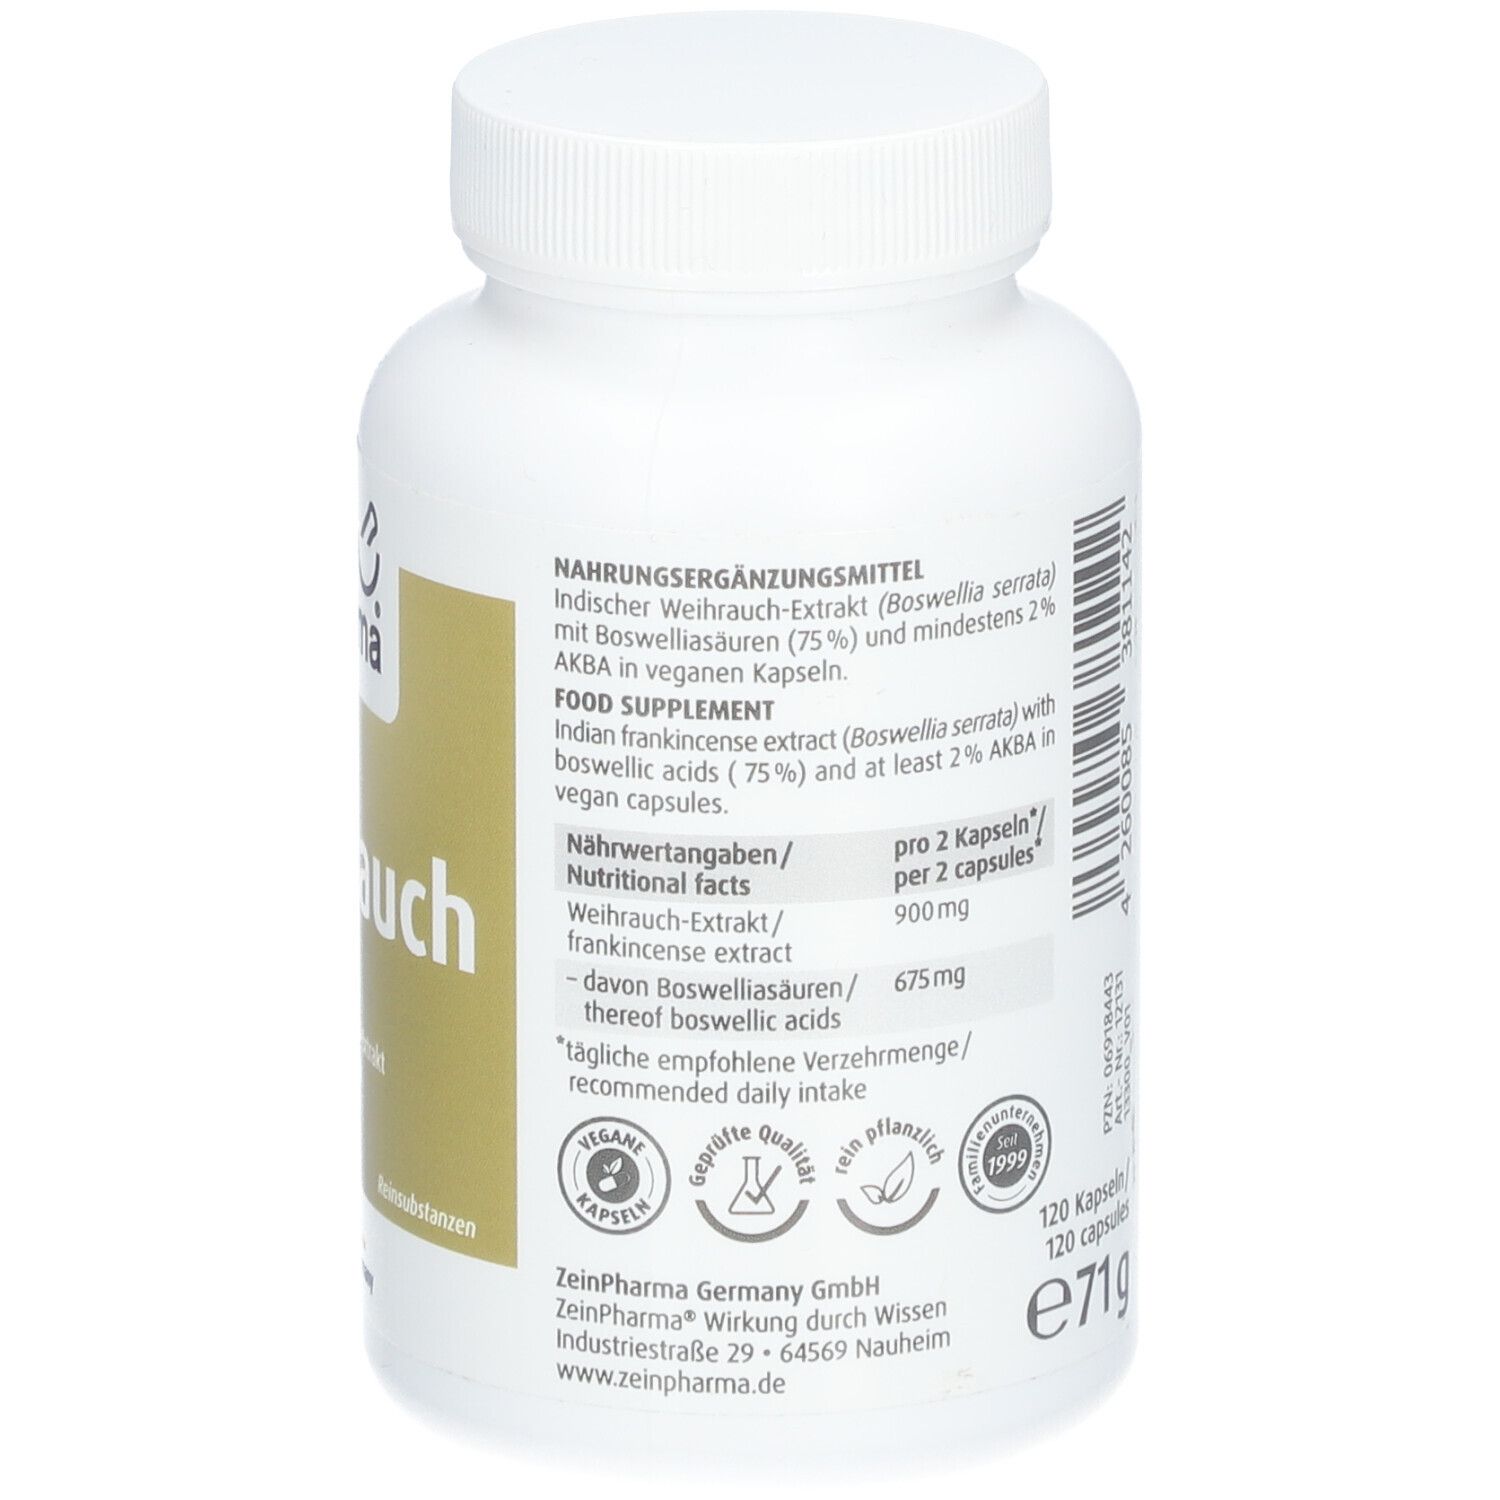 ZeinPharma® Weihrauch Kapseln 450 mg